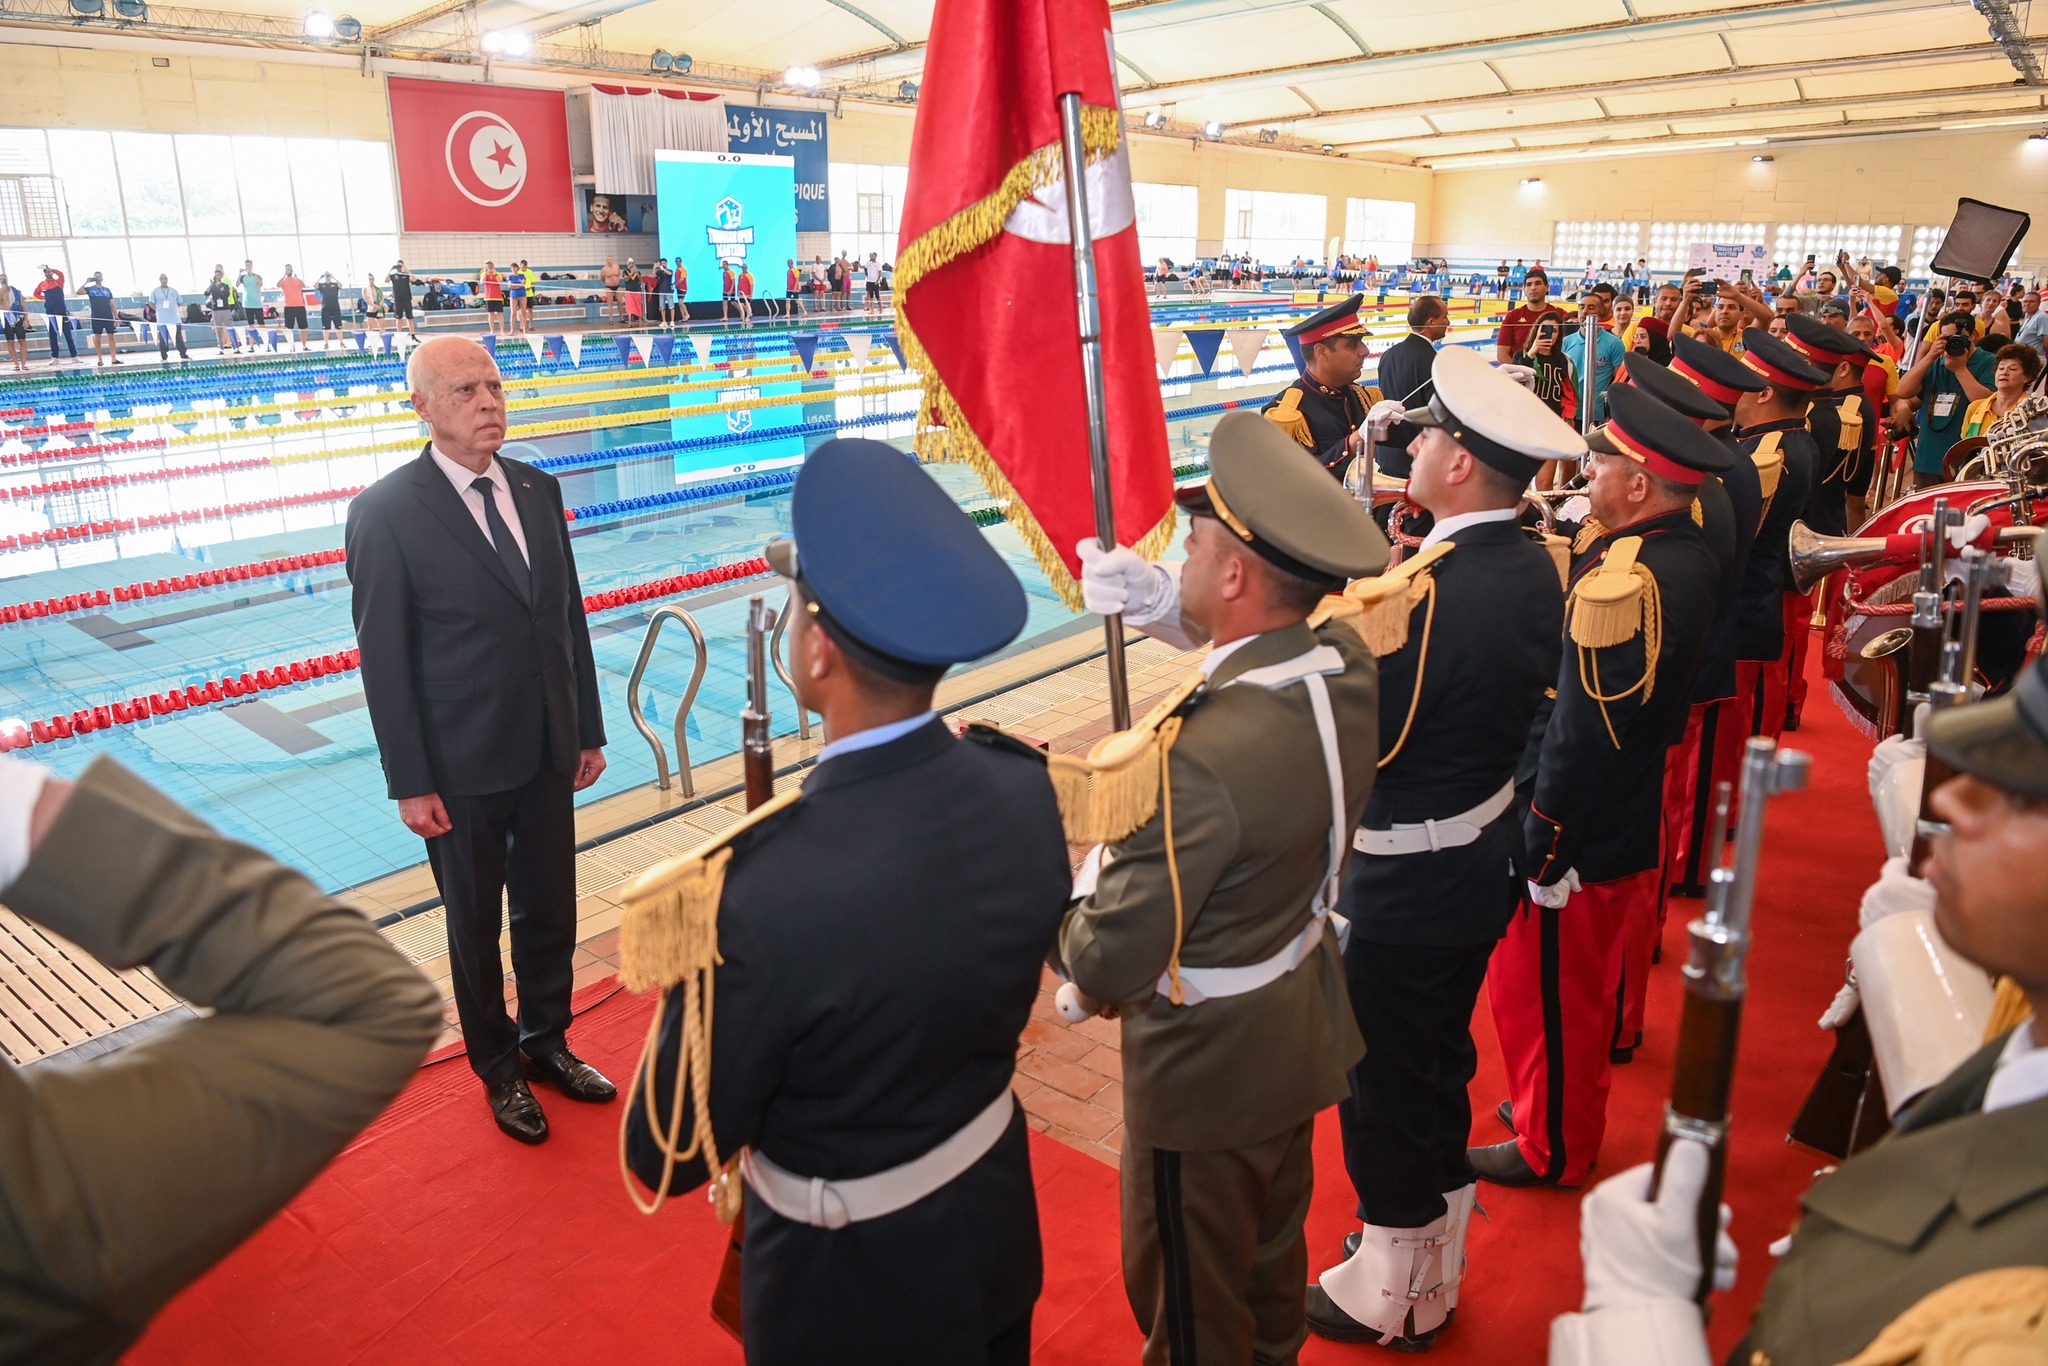 رئيس الجمهورية في زيارة غير مُعلنة للمسبح الأولمبي برادس